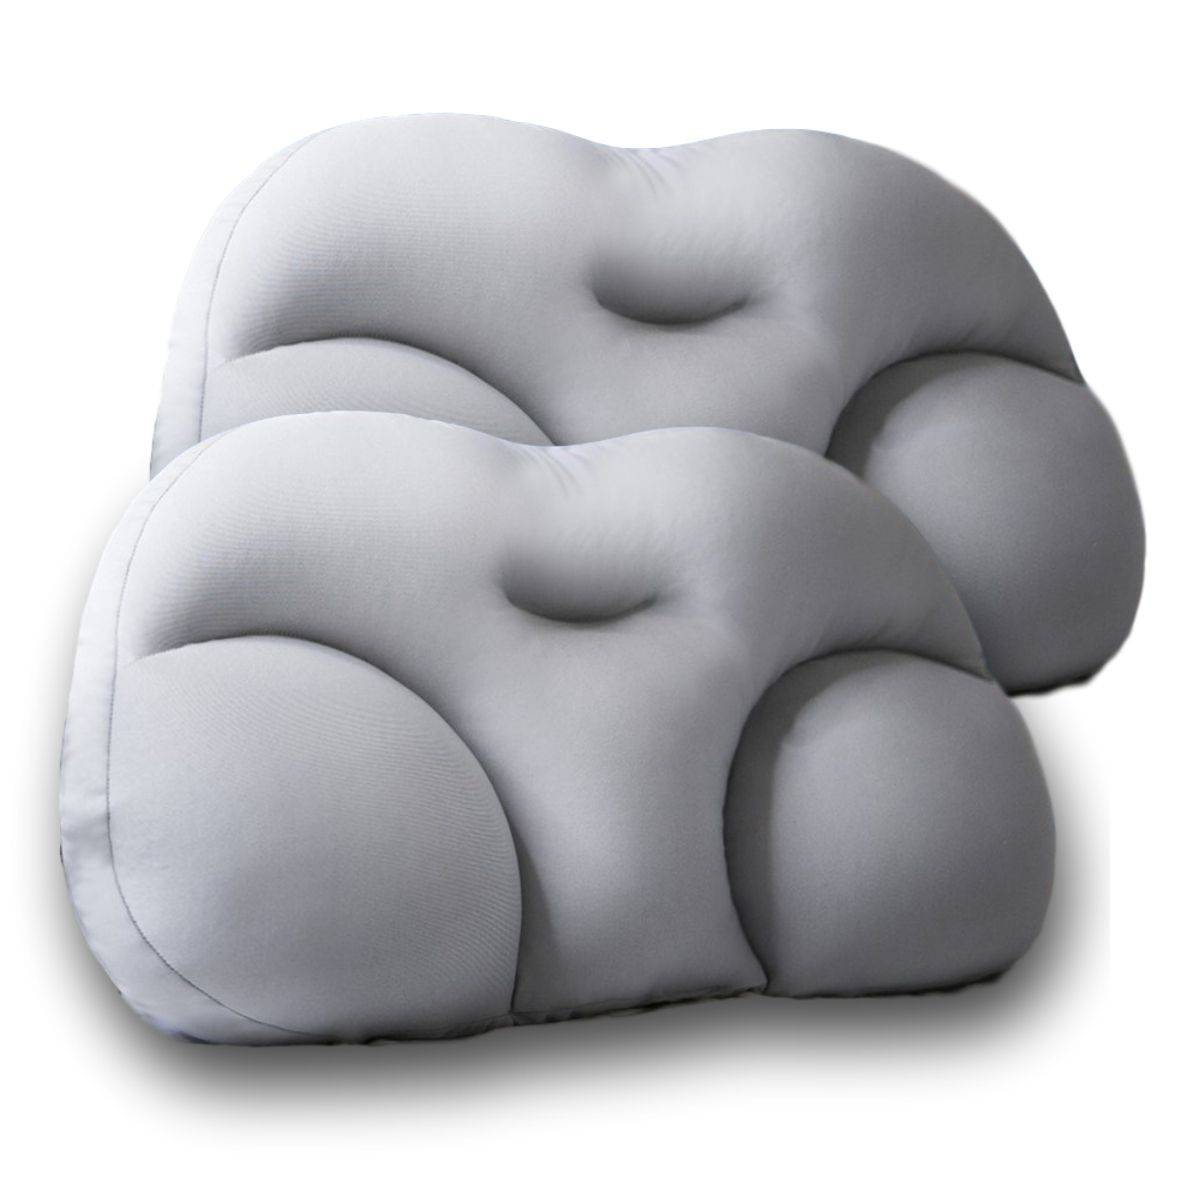 cloud pillow, neck support pillow, memory foam pillow